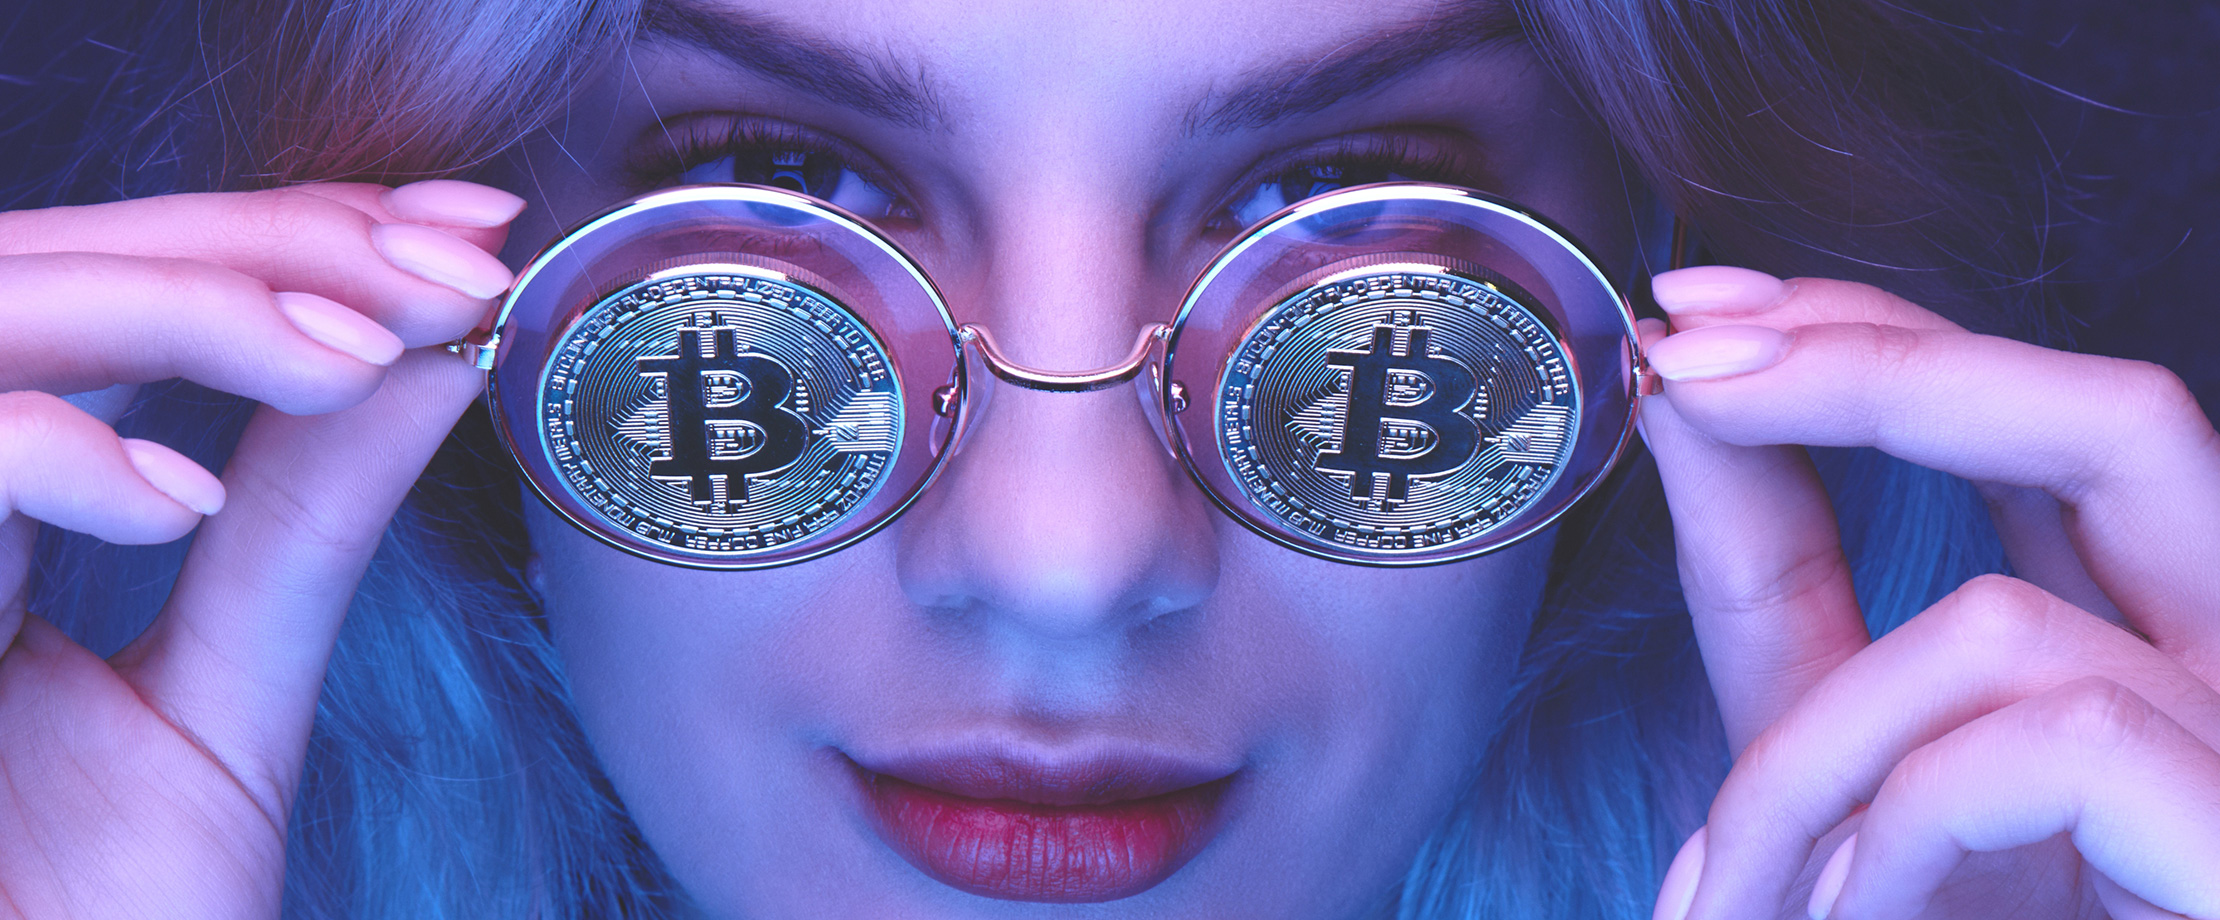 Das Gesicht einer jungen Frau wird von einem violetten Licht beleuchtet. Vor ihrem Gesicht hält sie eine runde Brille, auf deren Gläsern Bitcoin-Münzen abgebildet sind.